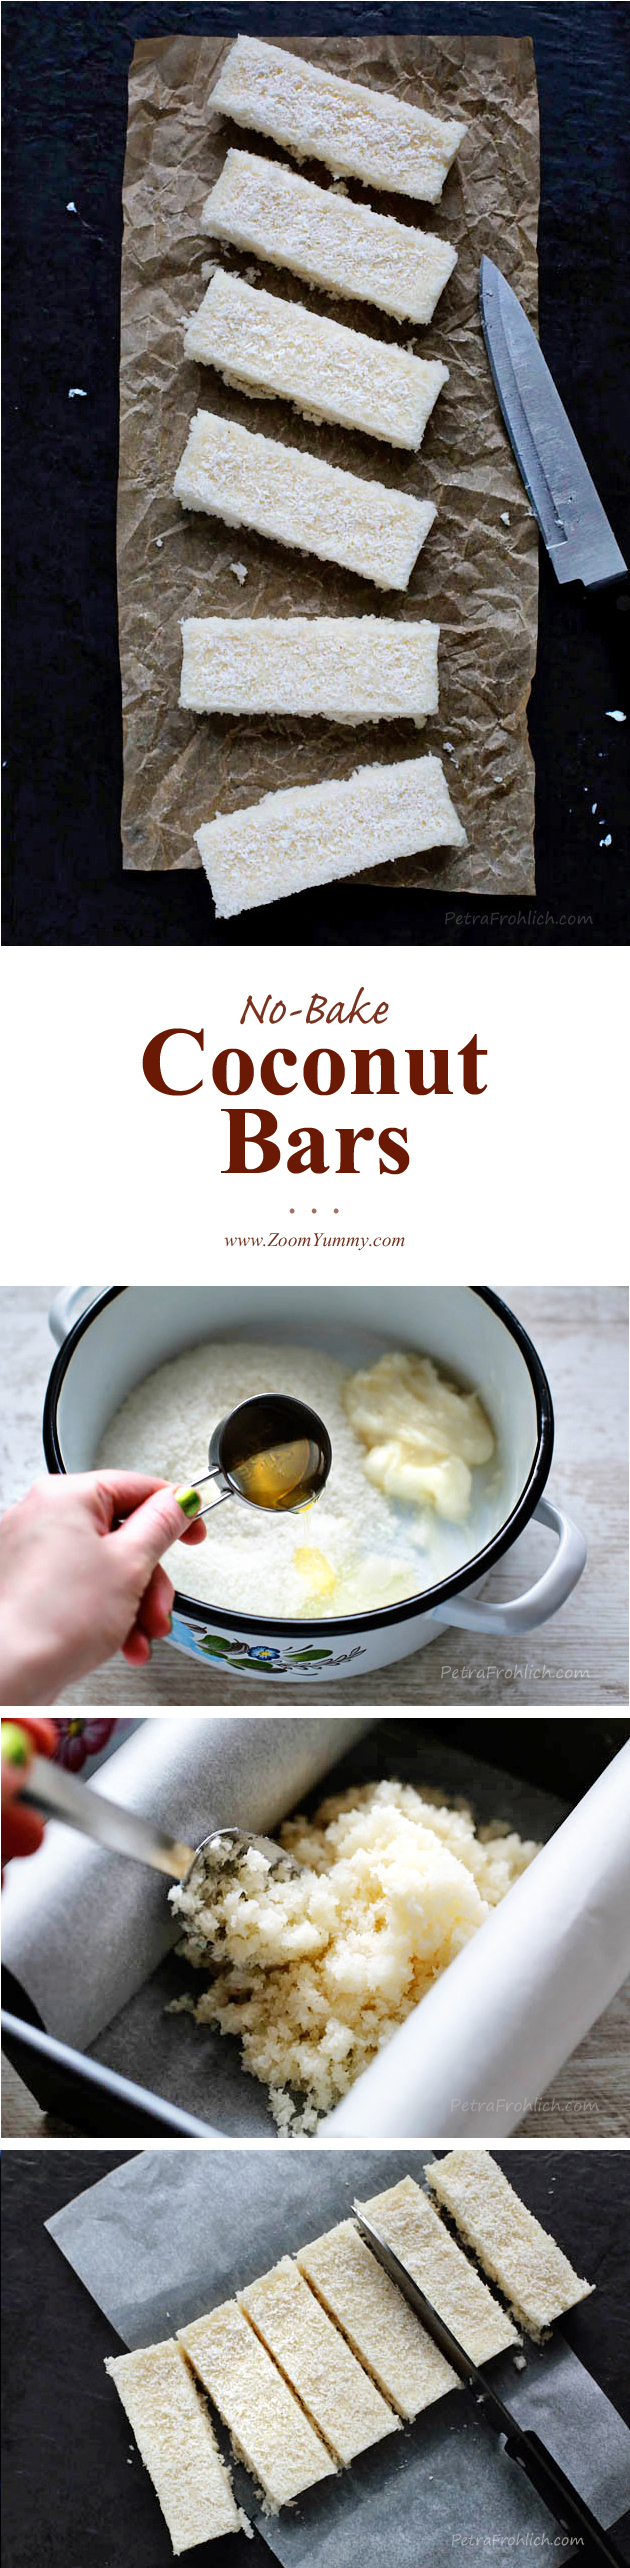 crack-coconut-bars-recipe